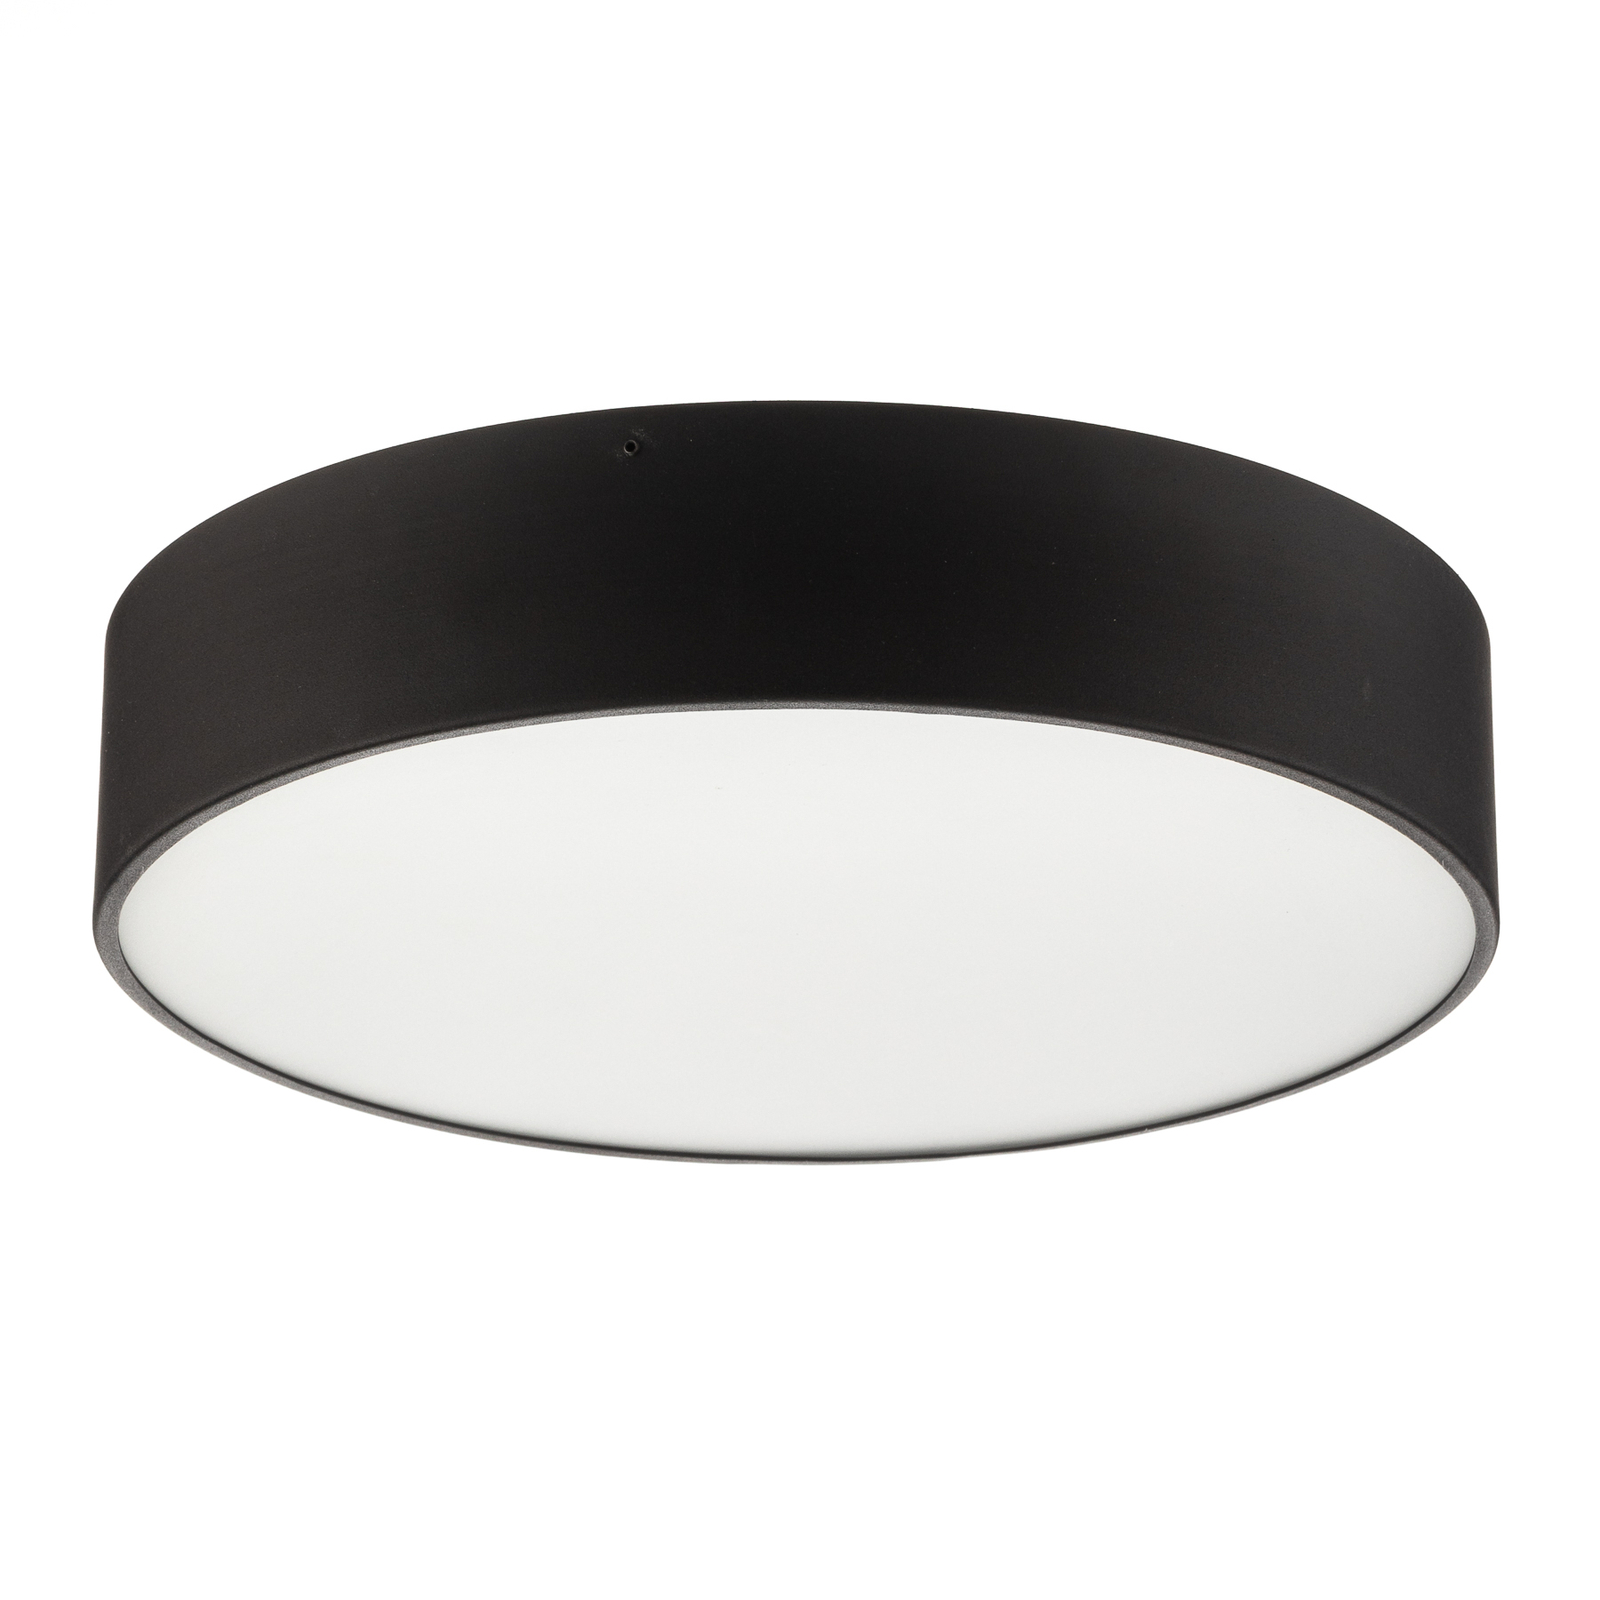 Dayton ceiling light in black Ø 35 cm